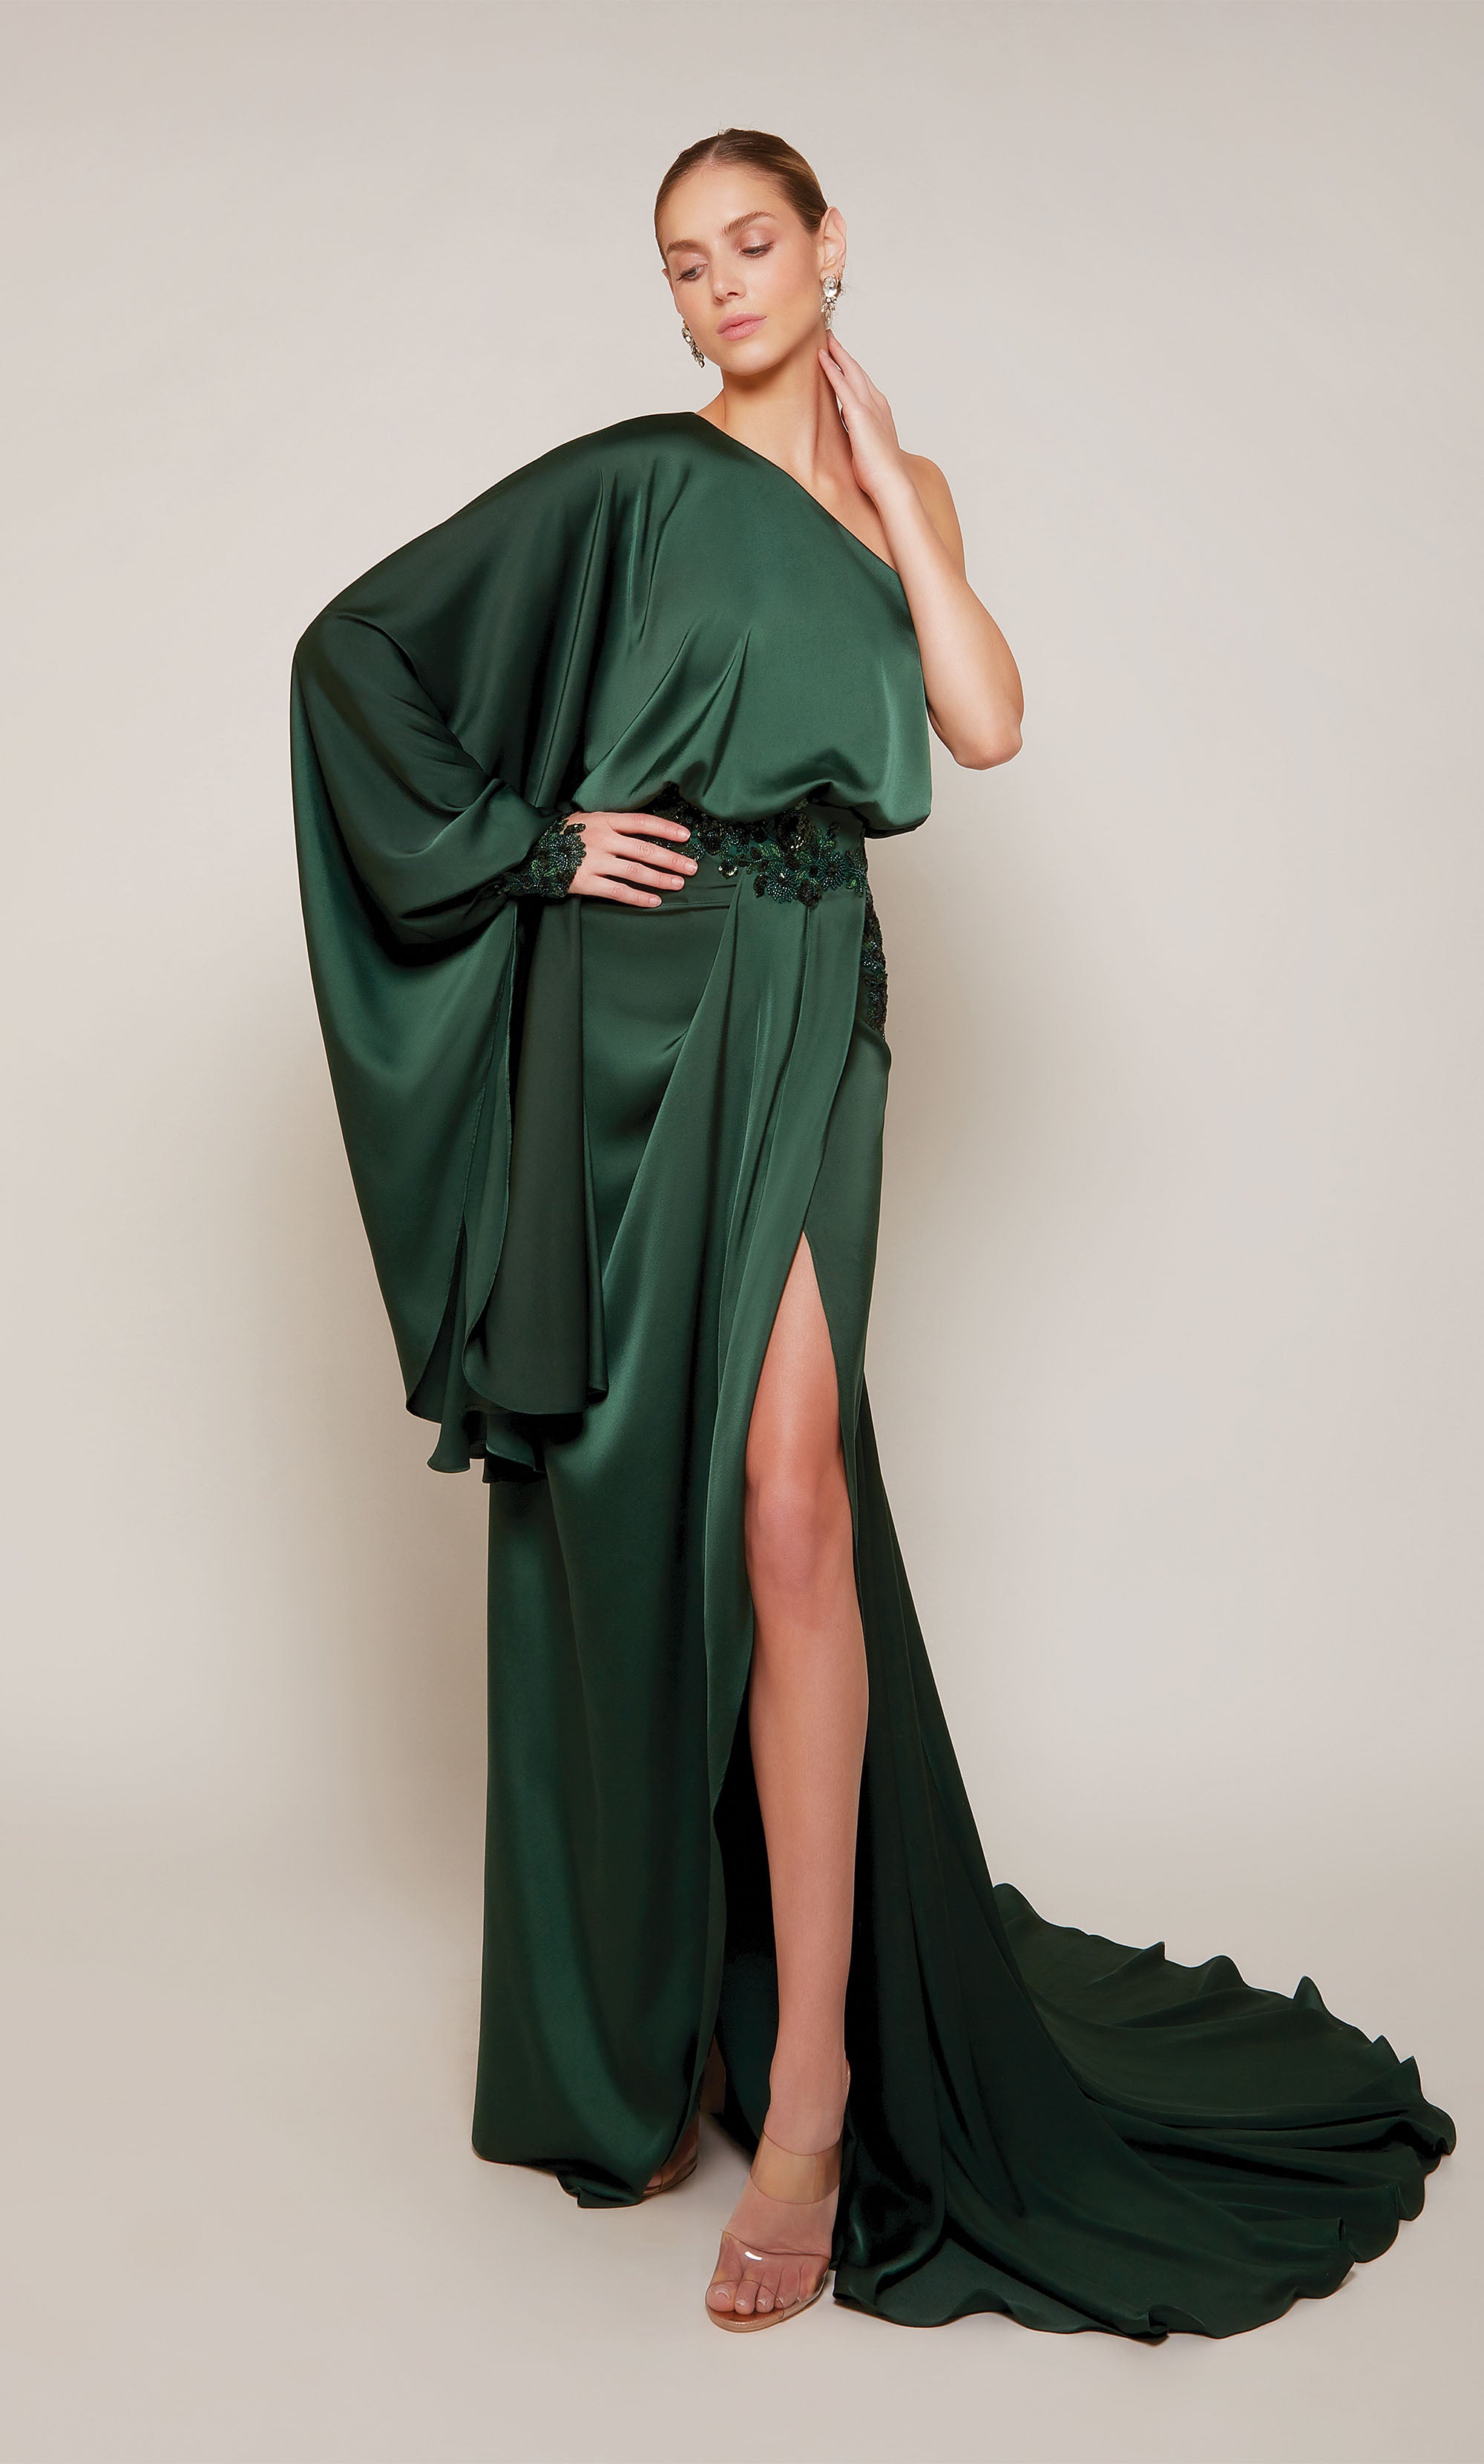 Form-Fitting Dresses | Elegancia Formal Wear